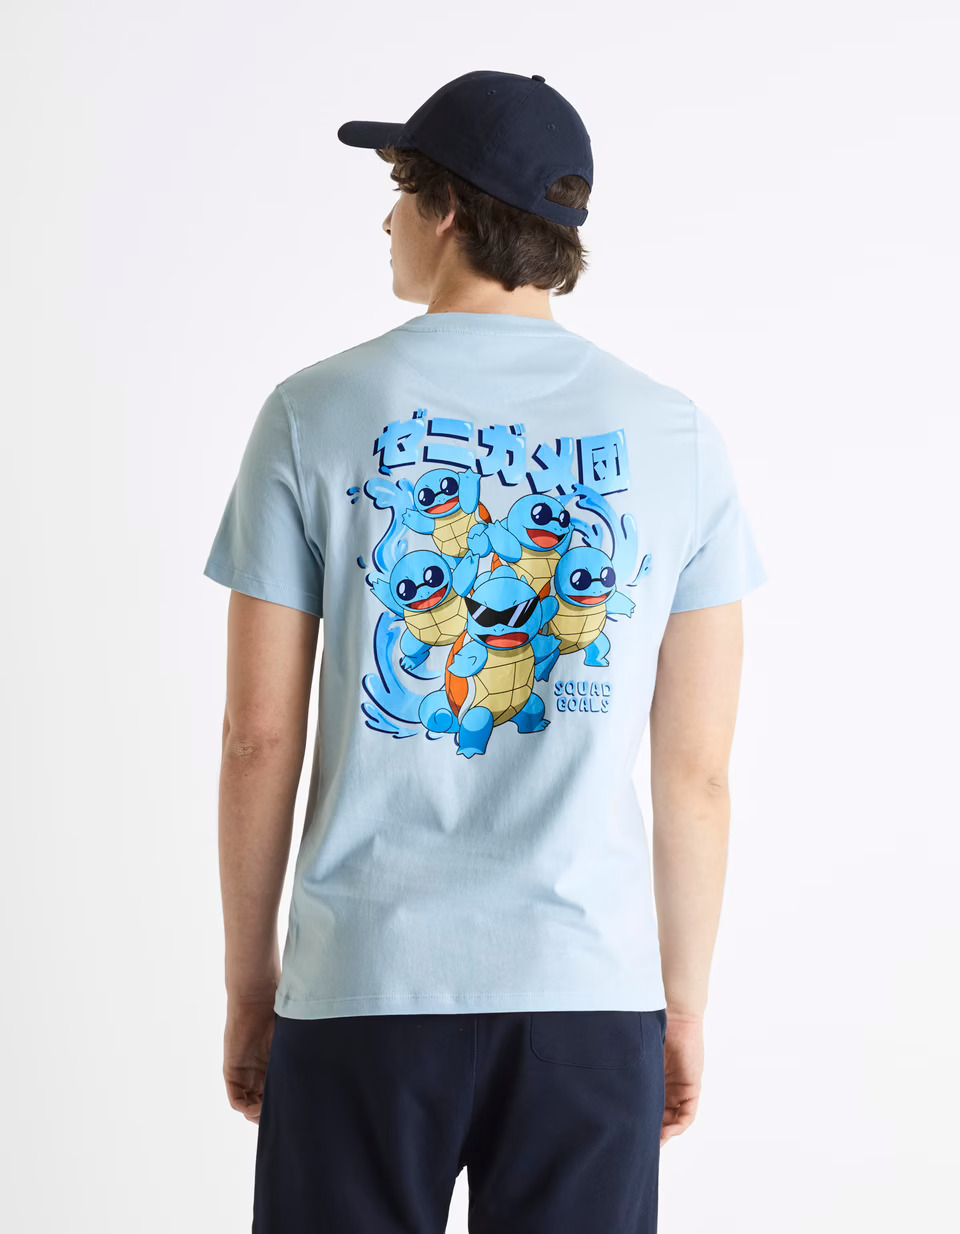 Pokémon Squad Goals - T-shirt